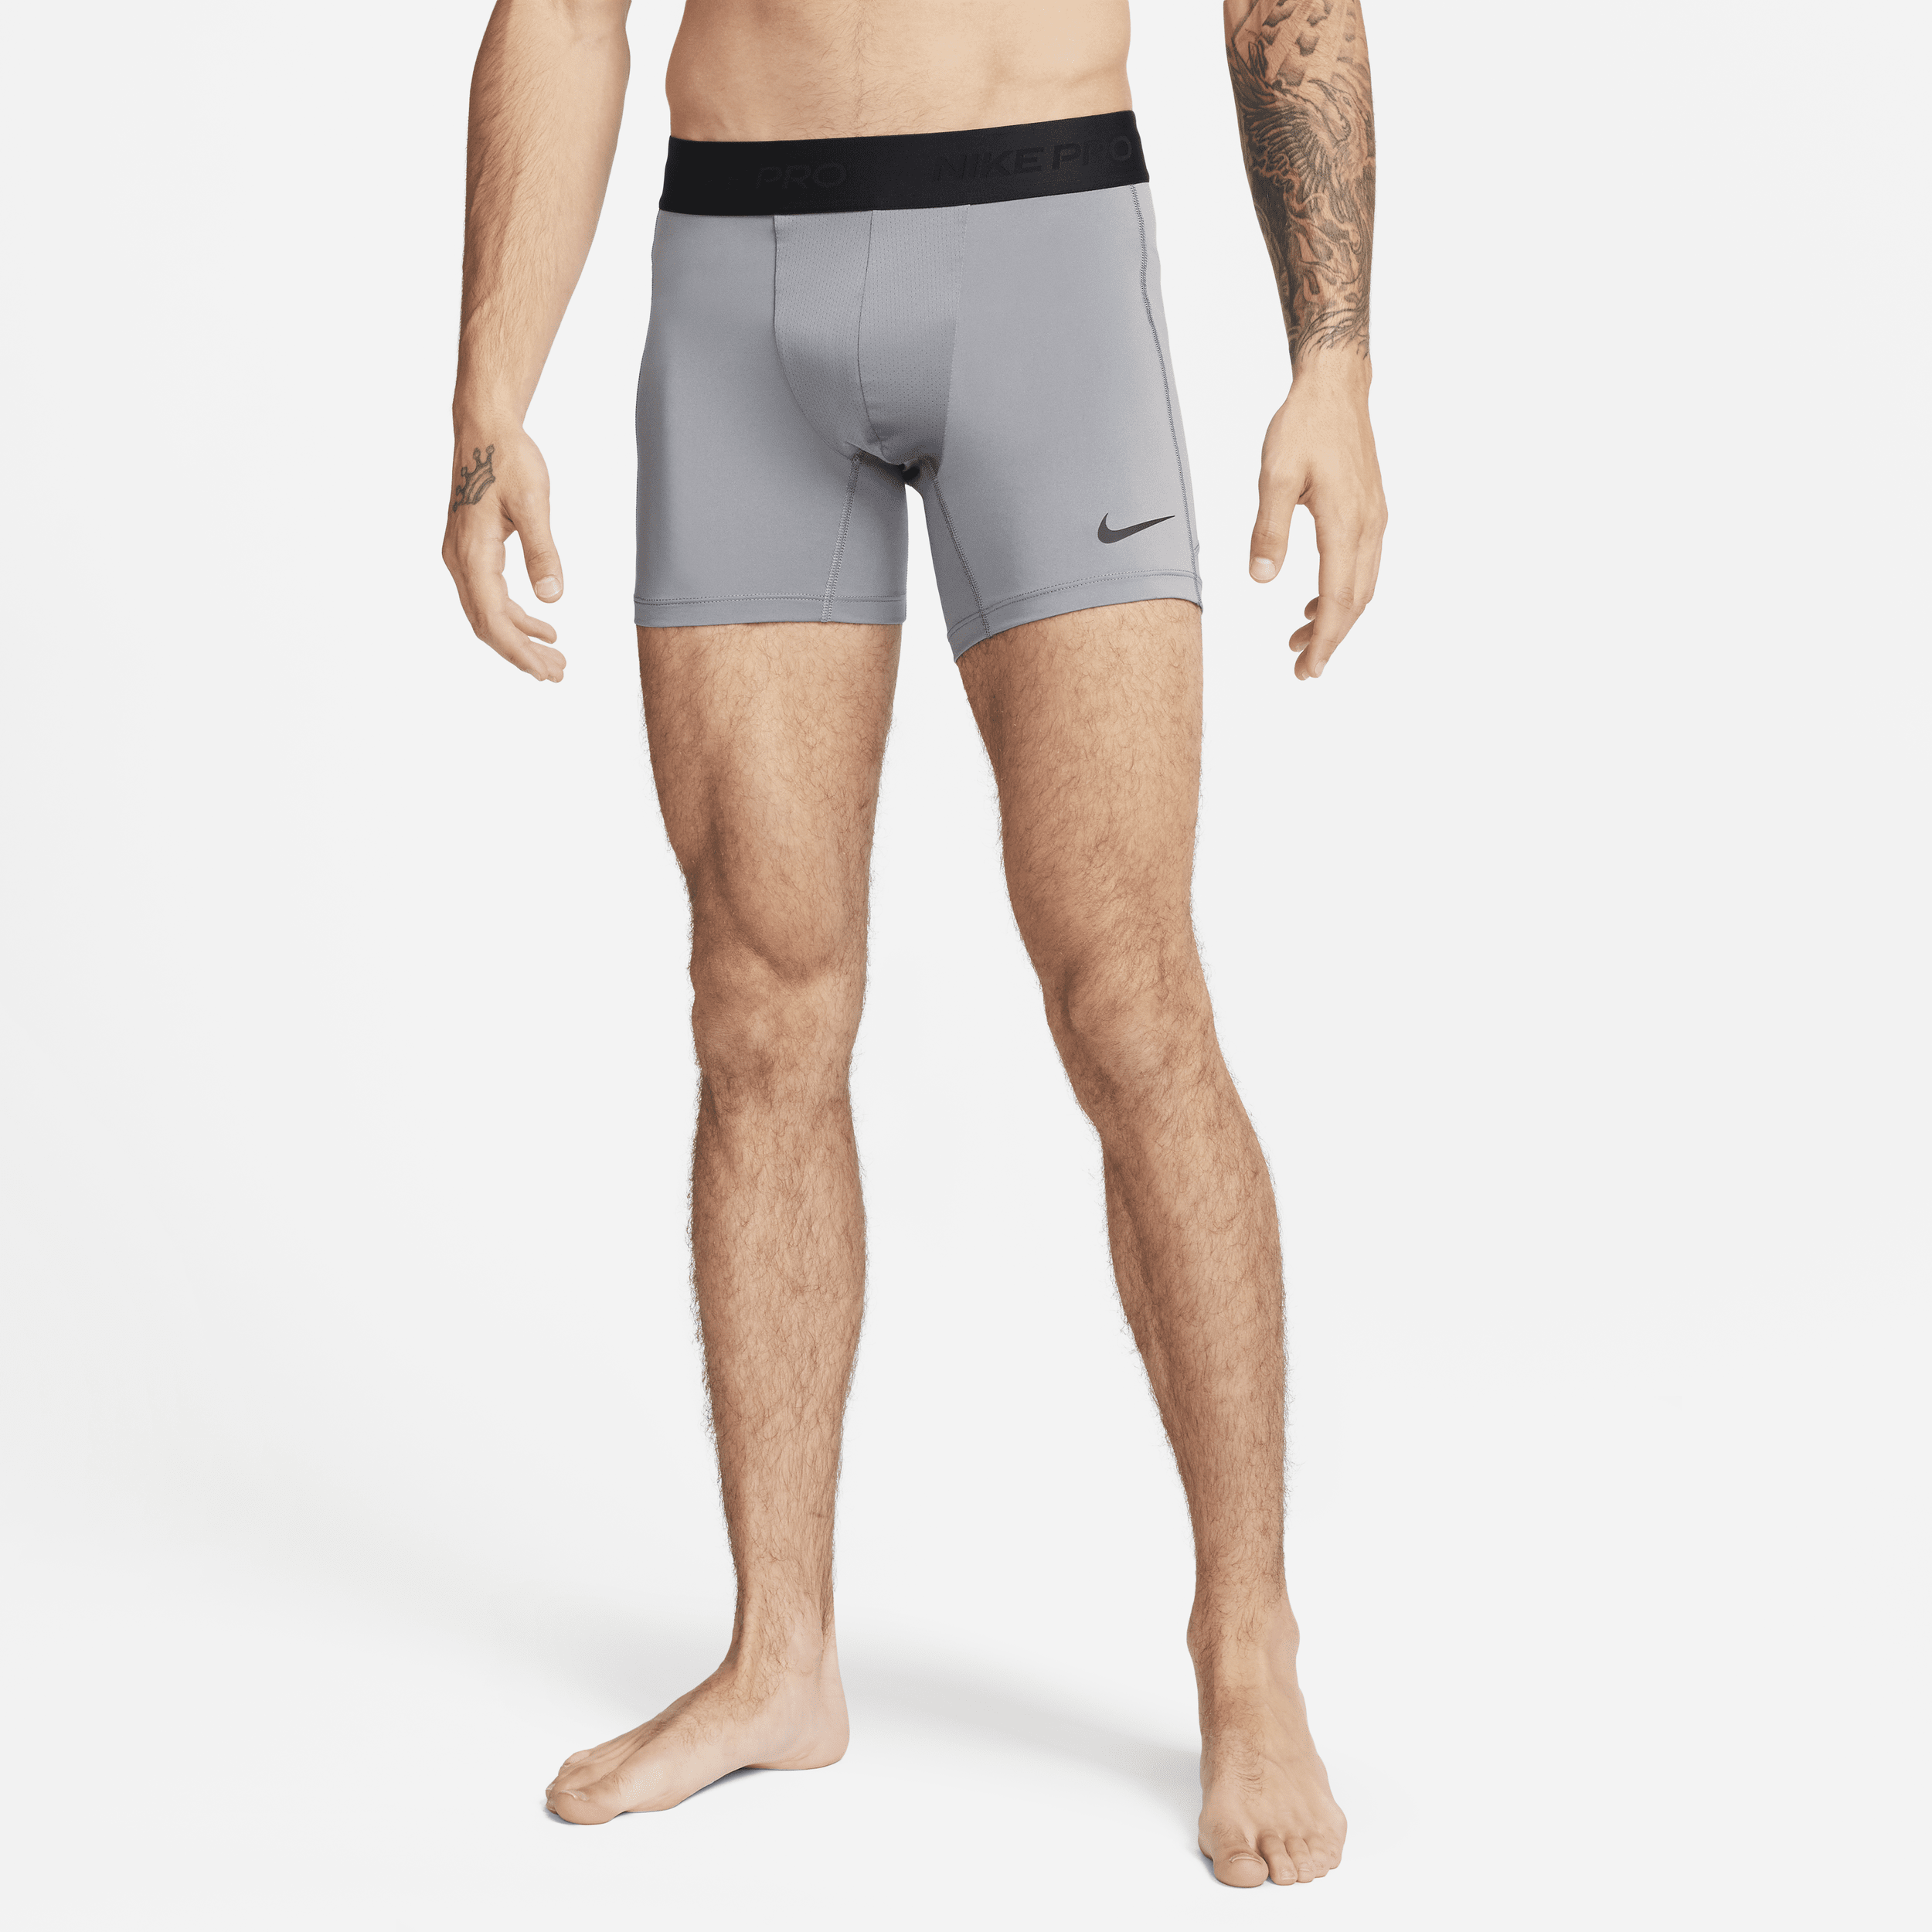 Shorts modello slip Dri-FIT Nike Pro – Uomo - Grigio